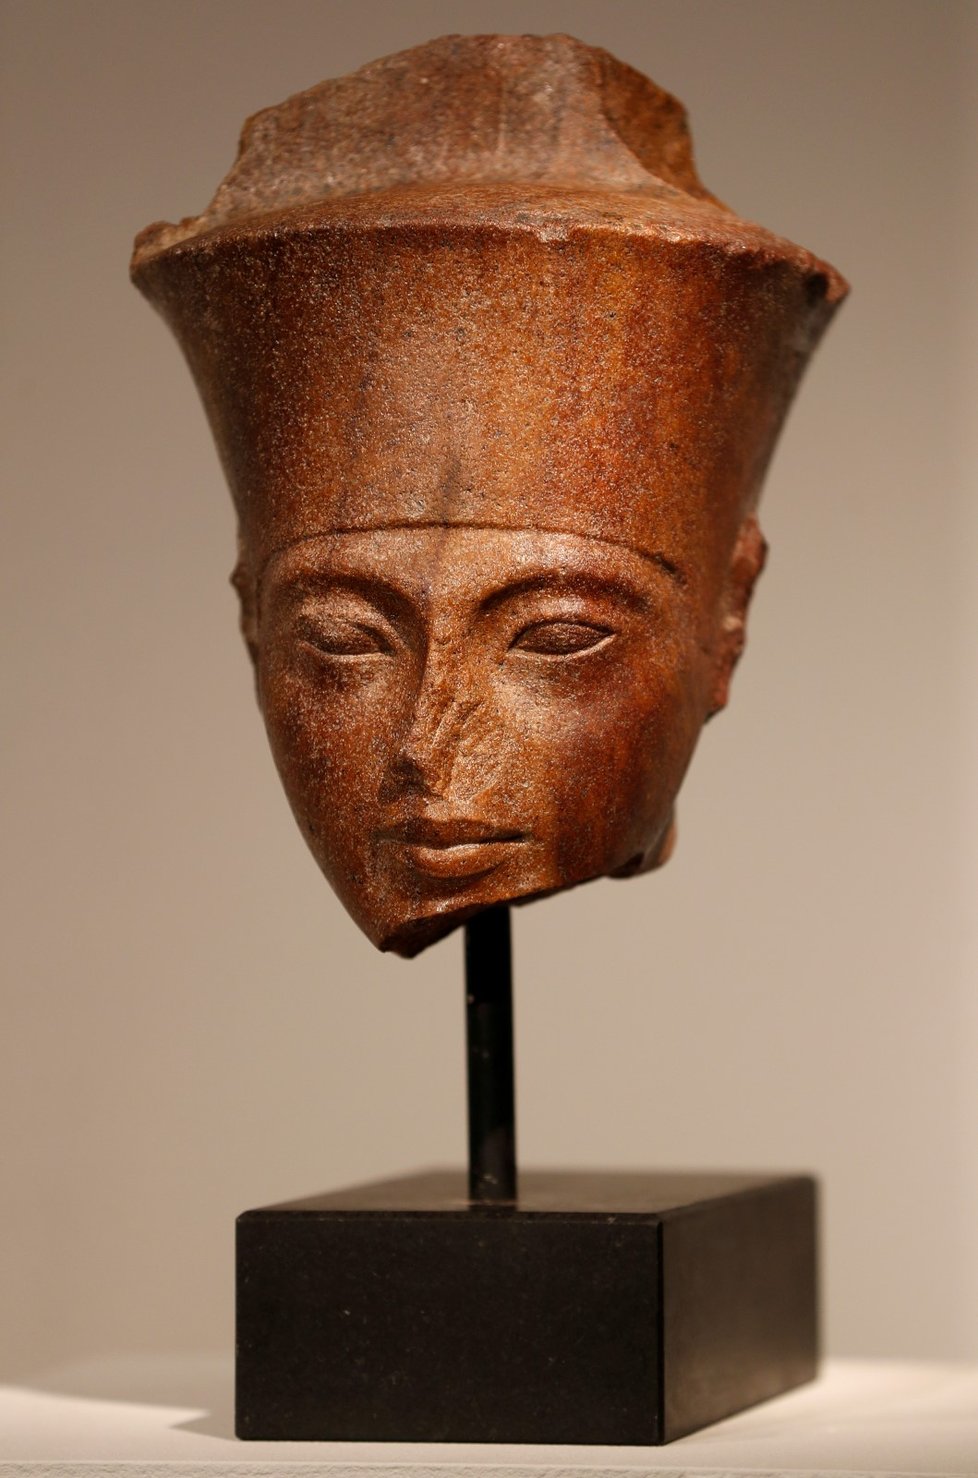 Busta mladého egyptského faraona Tutanchamona se vydražila na aukci v Londýně za více než 4,7 milionu liber (133 milionů Kč).